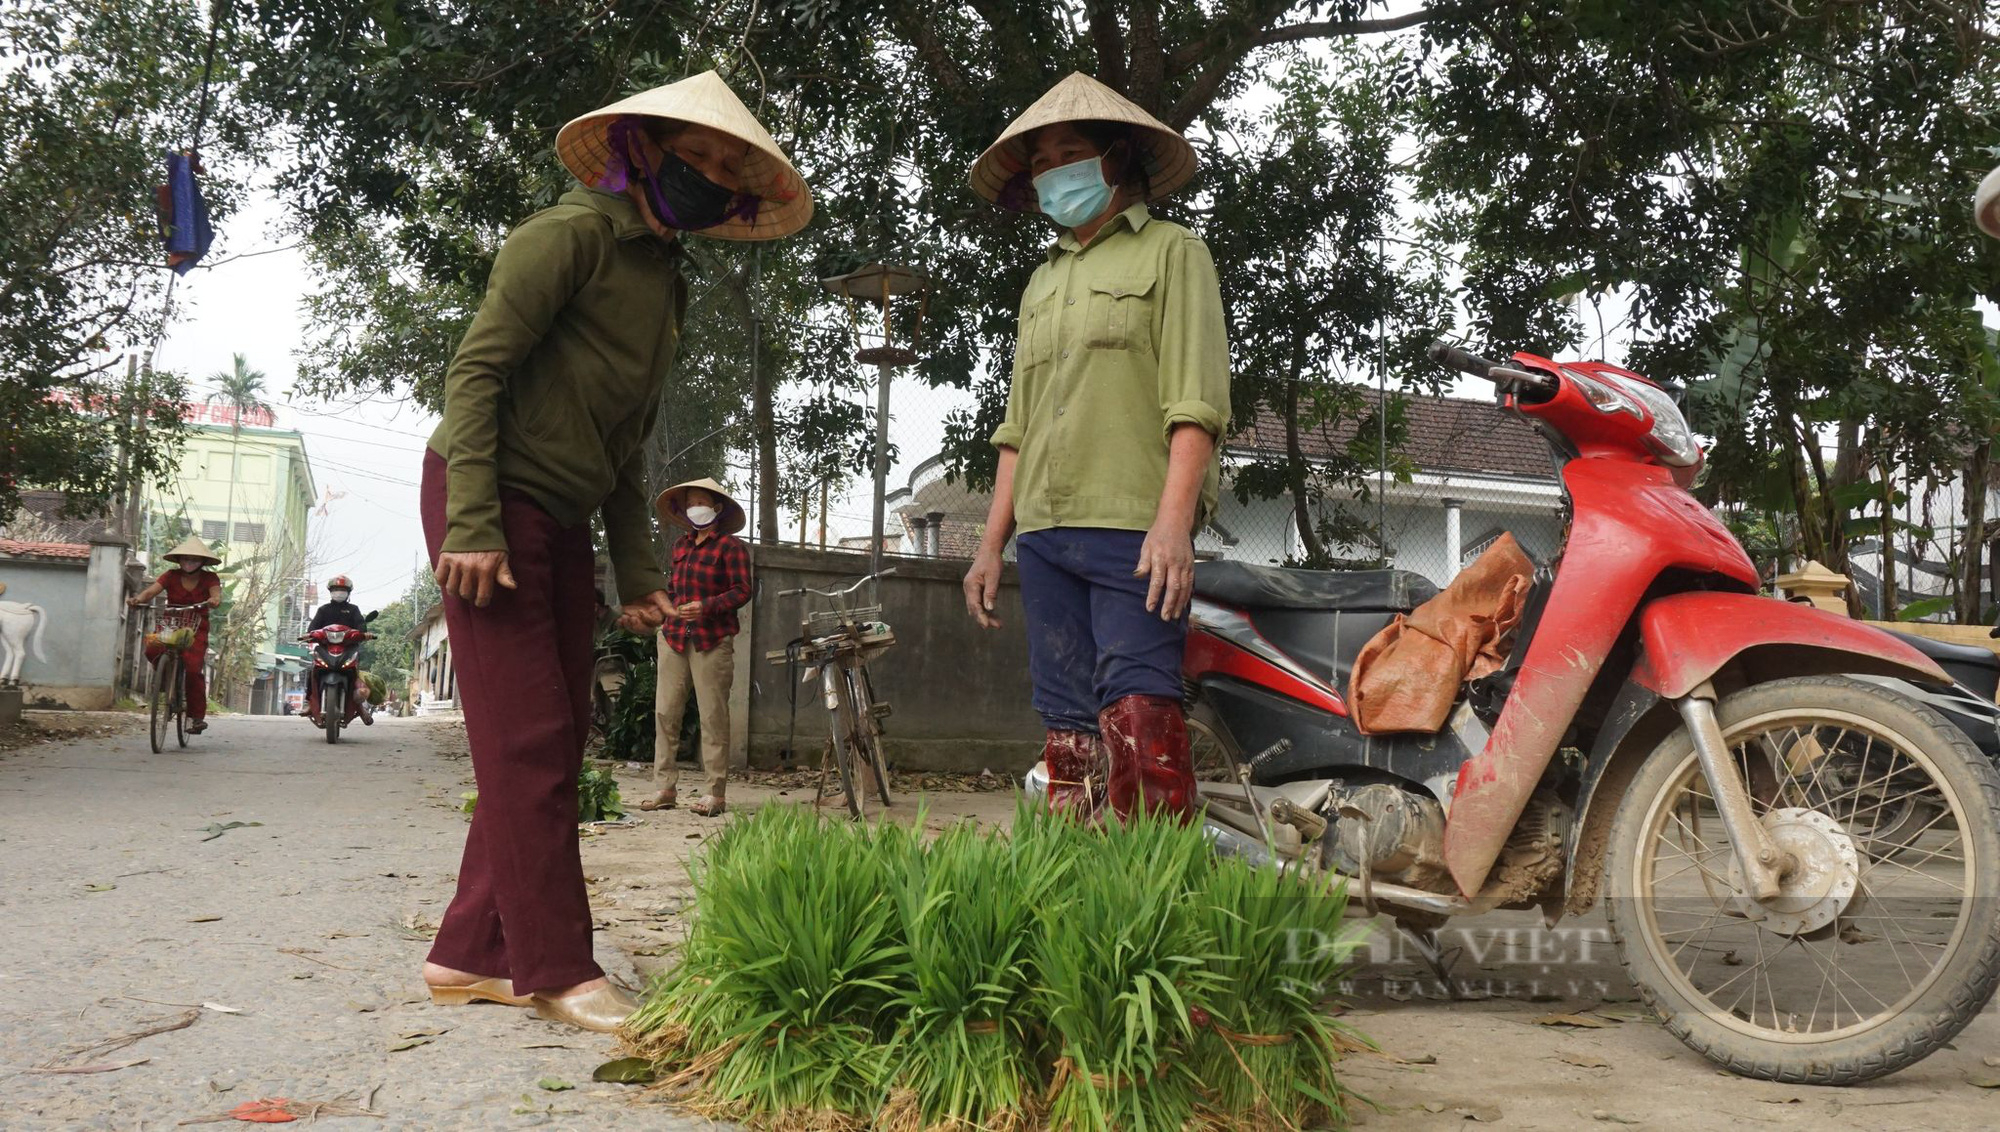 Nghệ An: Phiên chợ đặc biệt của những người nông dân, tỉa lúa non đi bán kiếm tiền đong chợ hàng ngày   - Ảnh 5.